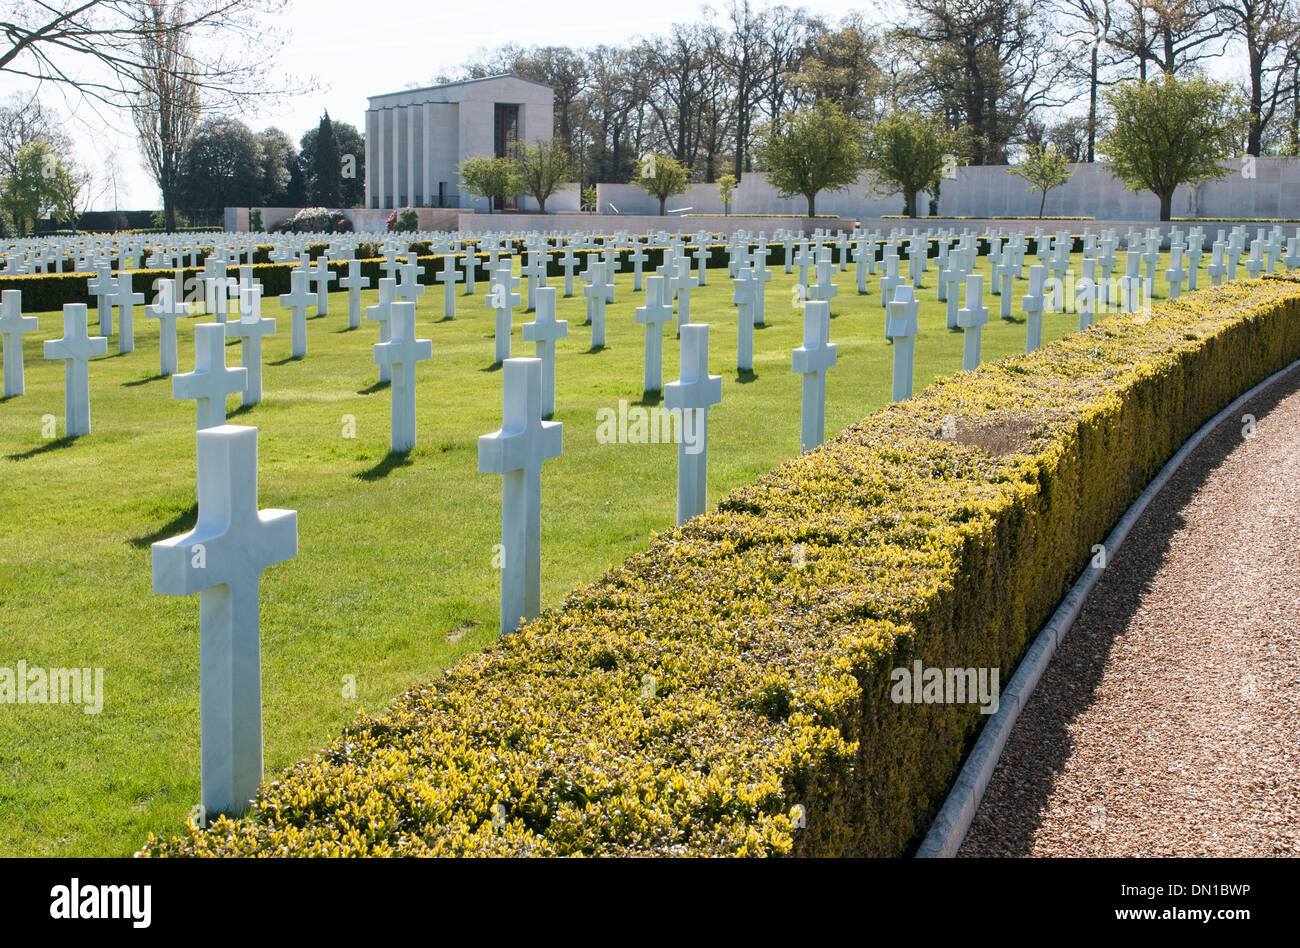 Tombes des soldats américains un qui est mort au cours de la Seconde Guerre mondiale et la Chapelle du Souvenir, le cimetière de guerre US, Madingley, Cambridge, Royaume-Uni Banque D'Images